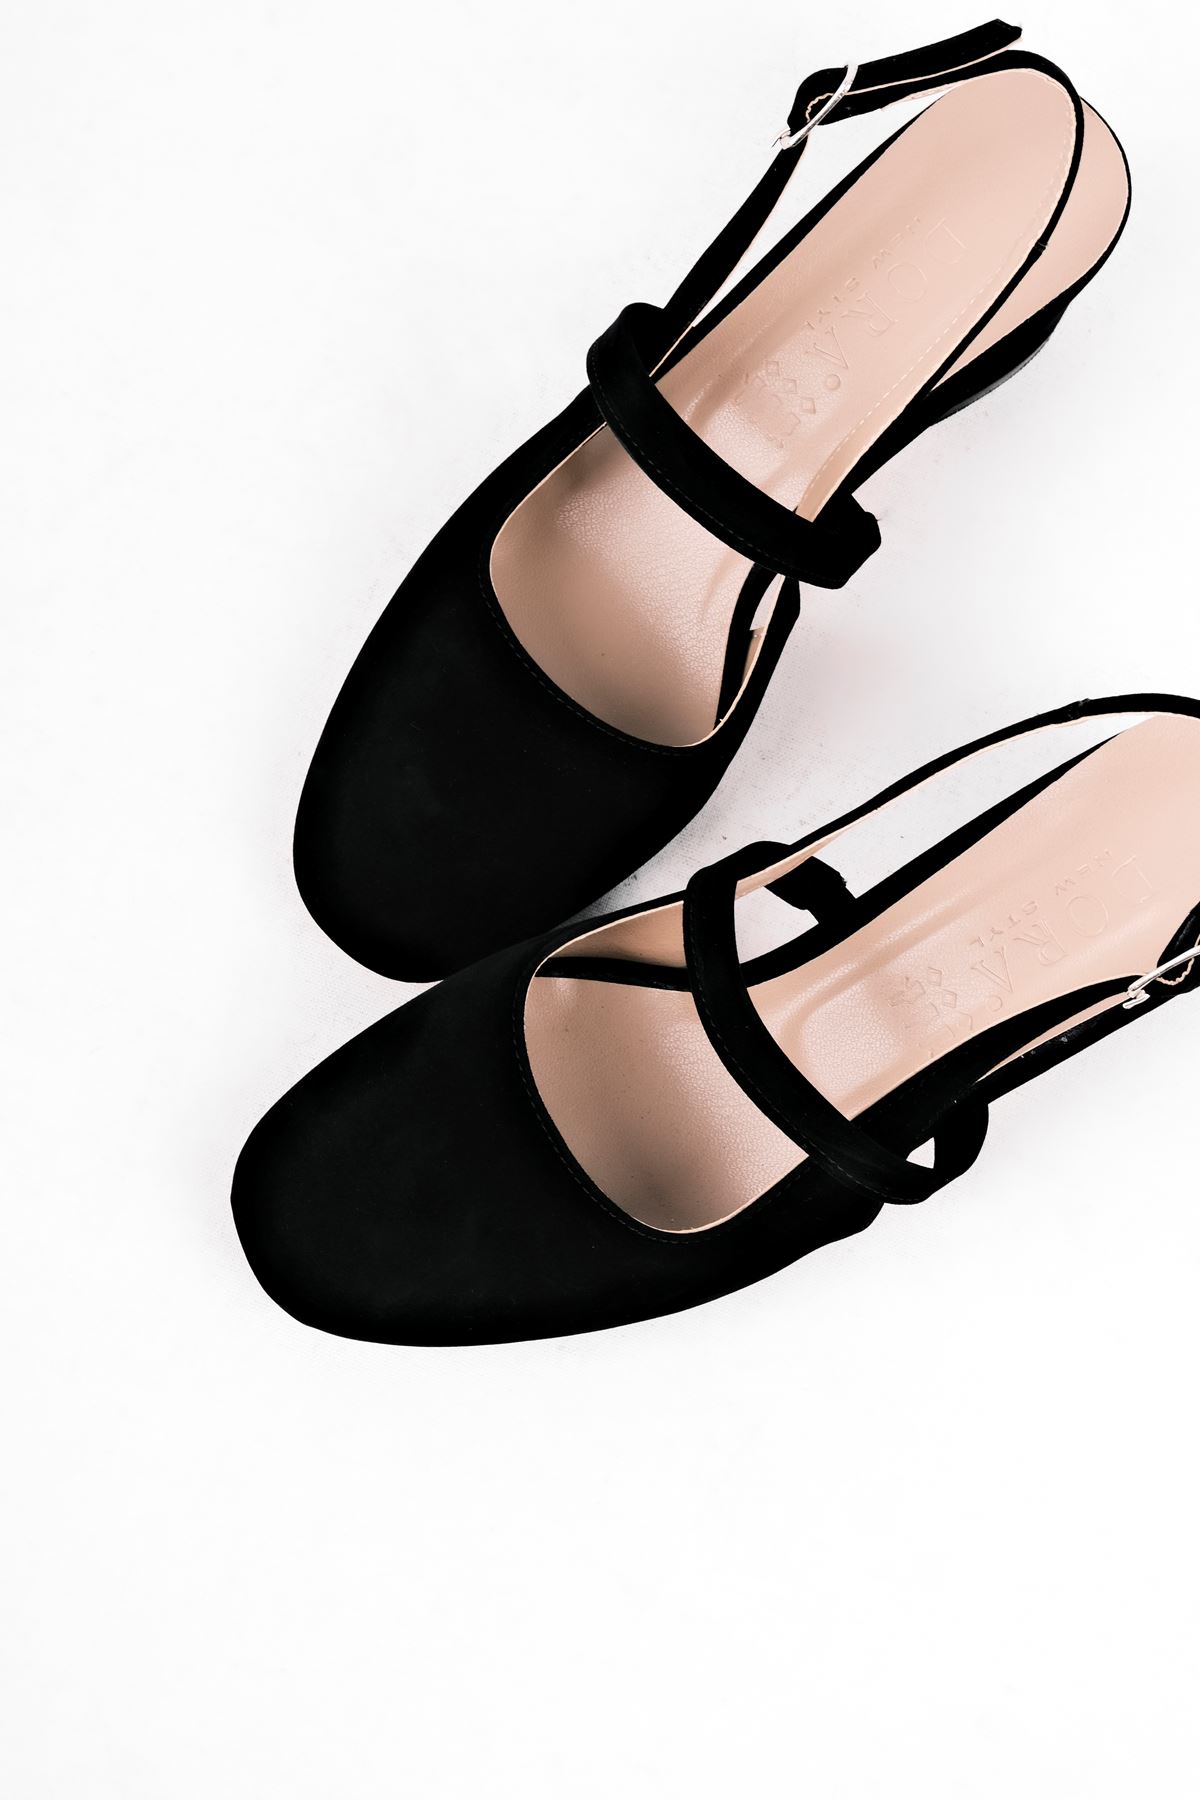 Biana Kadın Topuklu Ayakkabı Bant Detaylı-S.Siyah